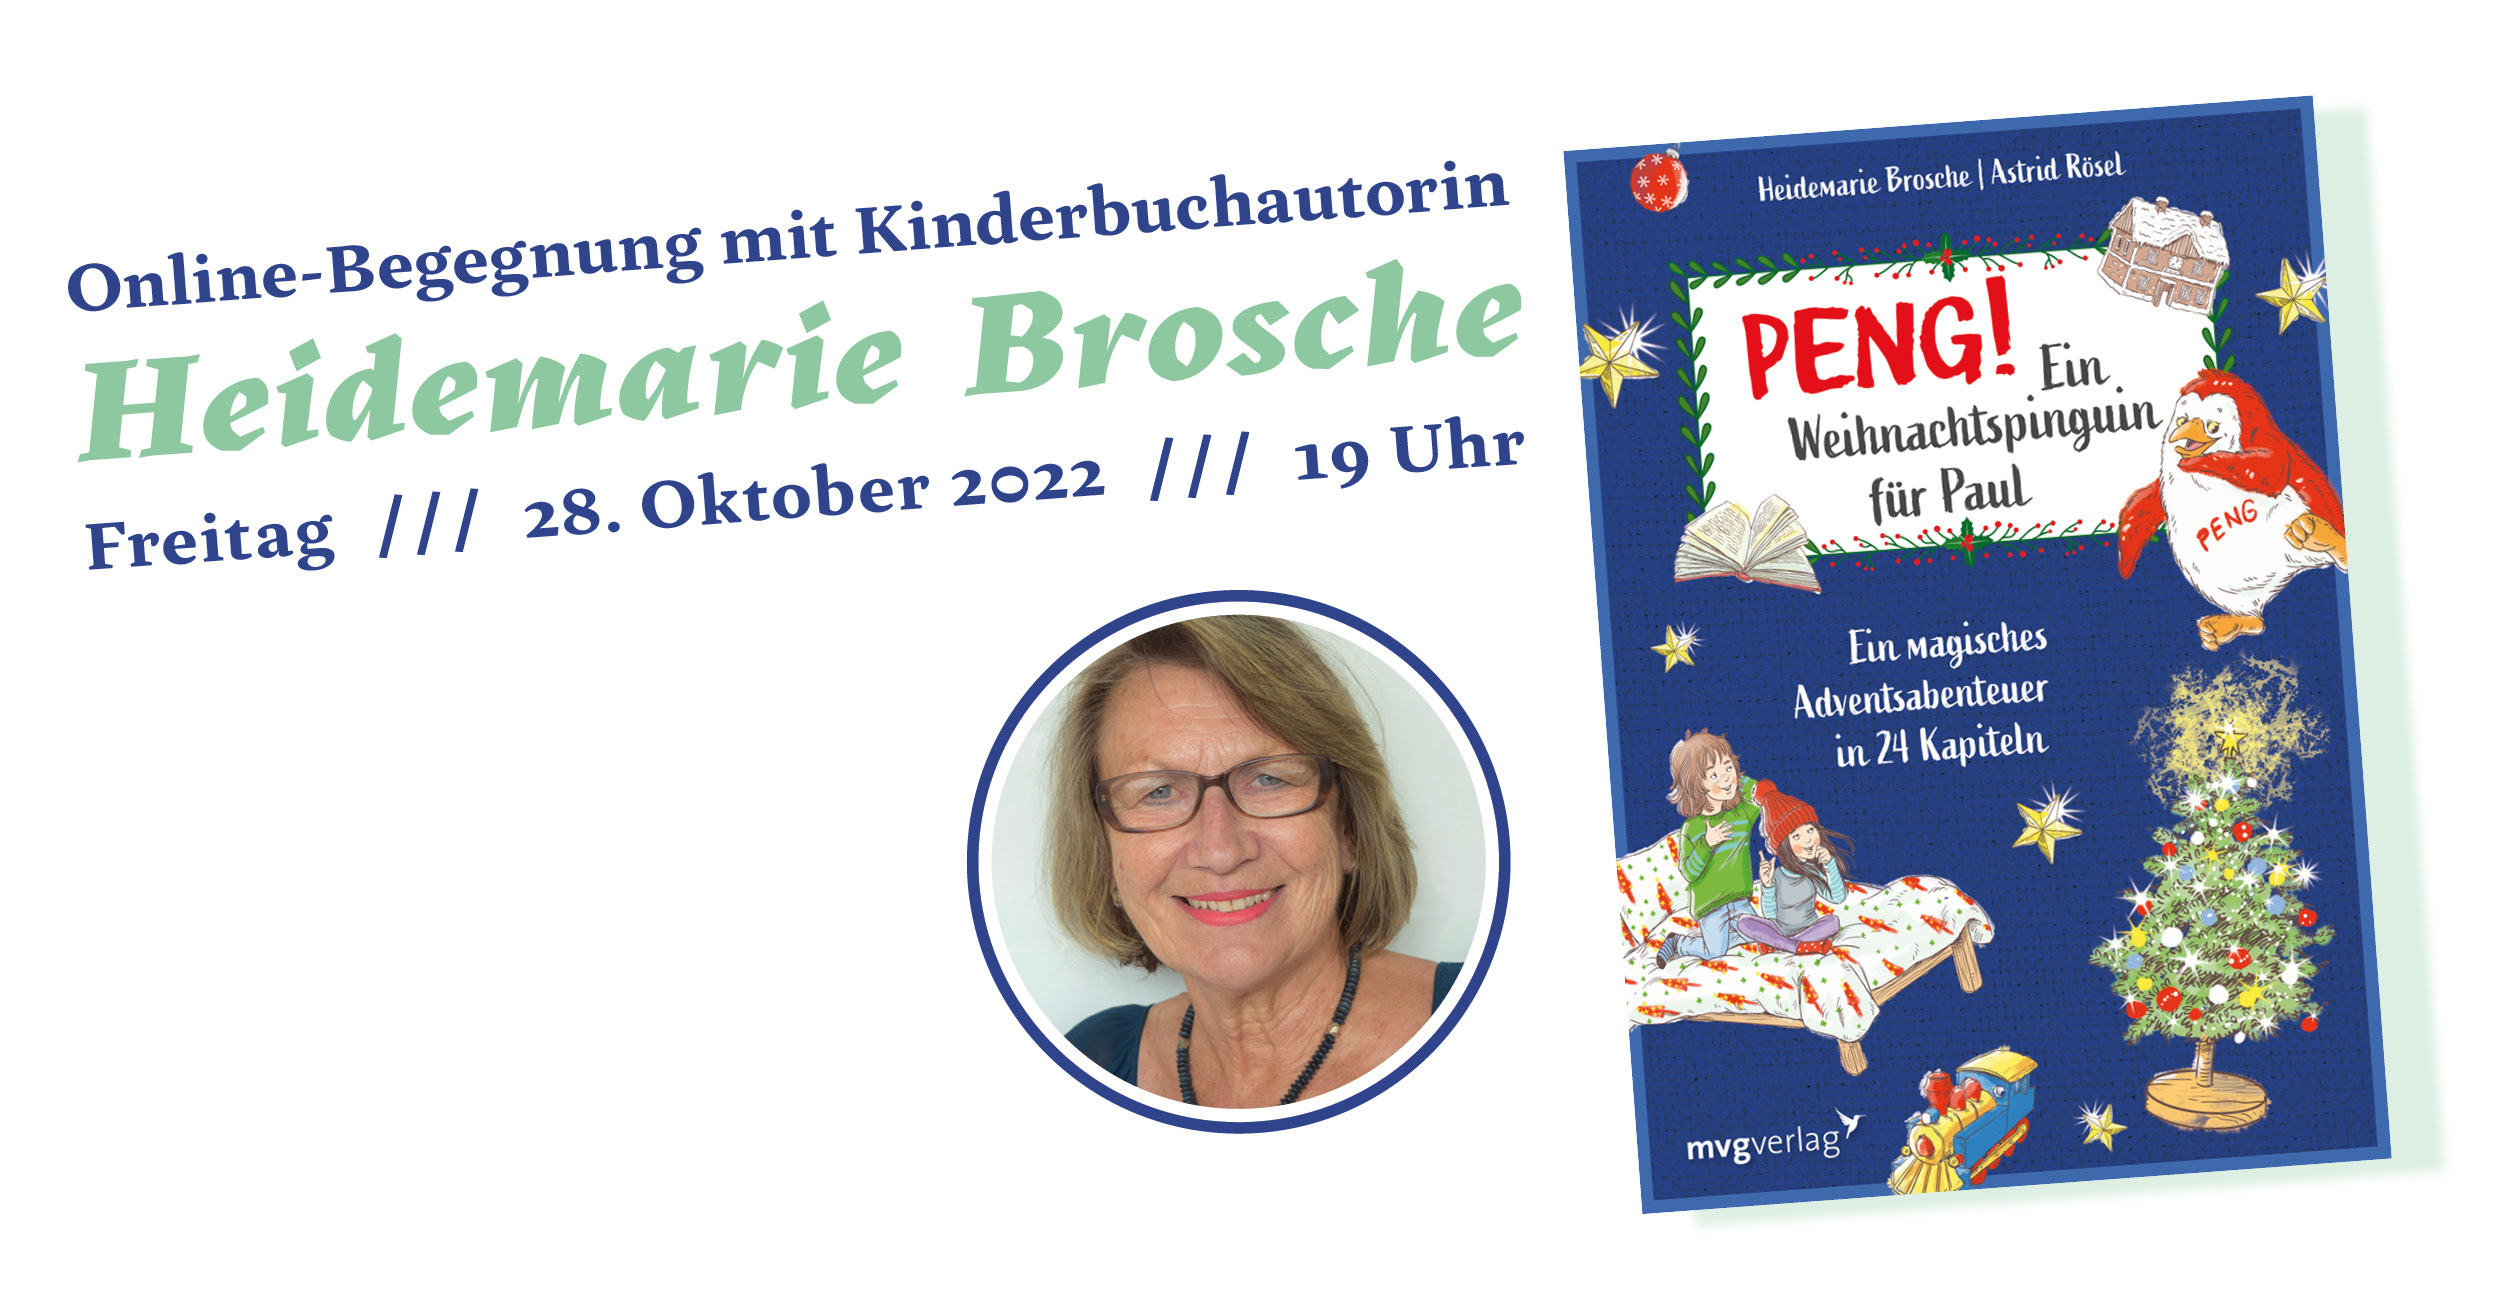 PENG! Ein Weihnachtspinguin für Paul - Onlinelesung mit Heidemarie Brosche (28.10.2022)